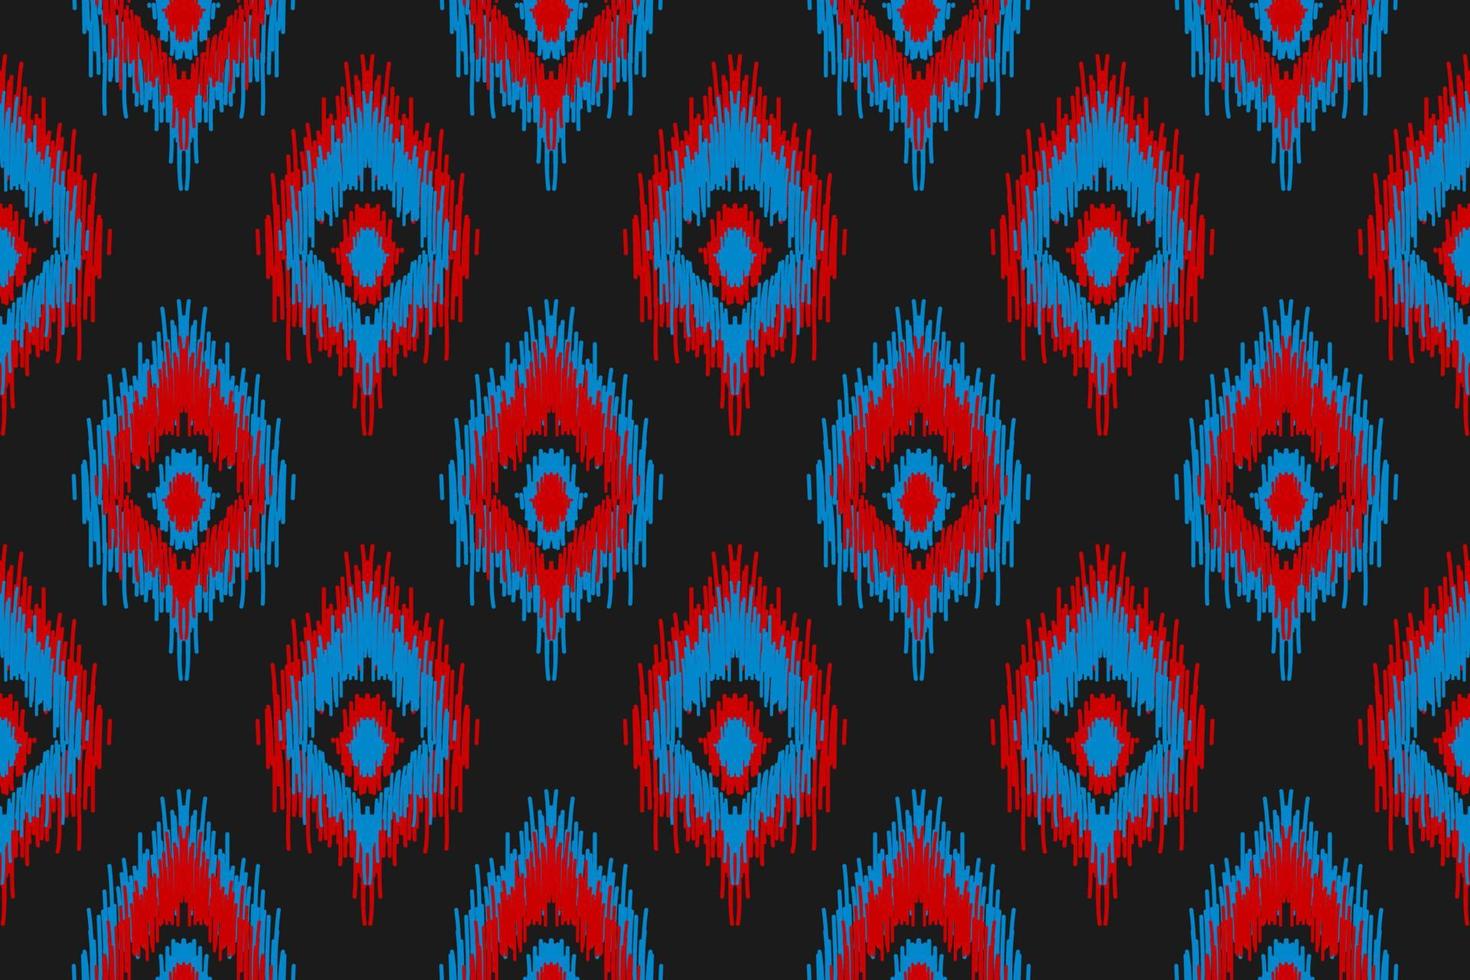 padrão sem emenda de ikat étnico em tribal. estilo americano, mexicano. impressão de ornamento geométrico asteca. vetor